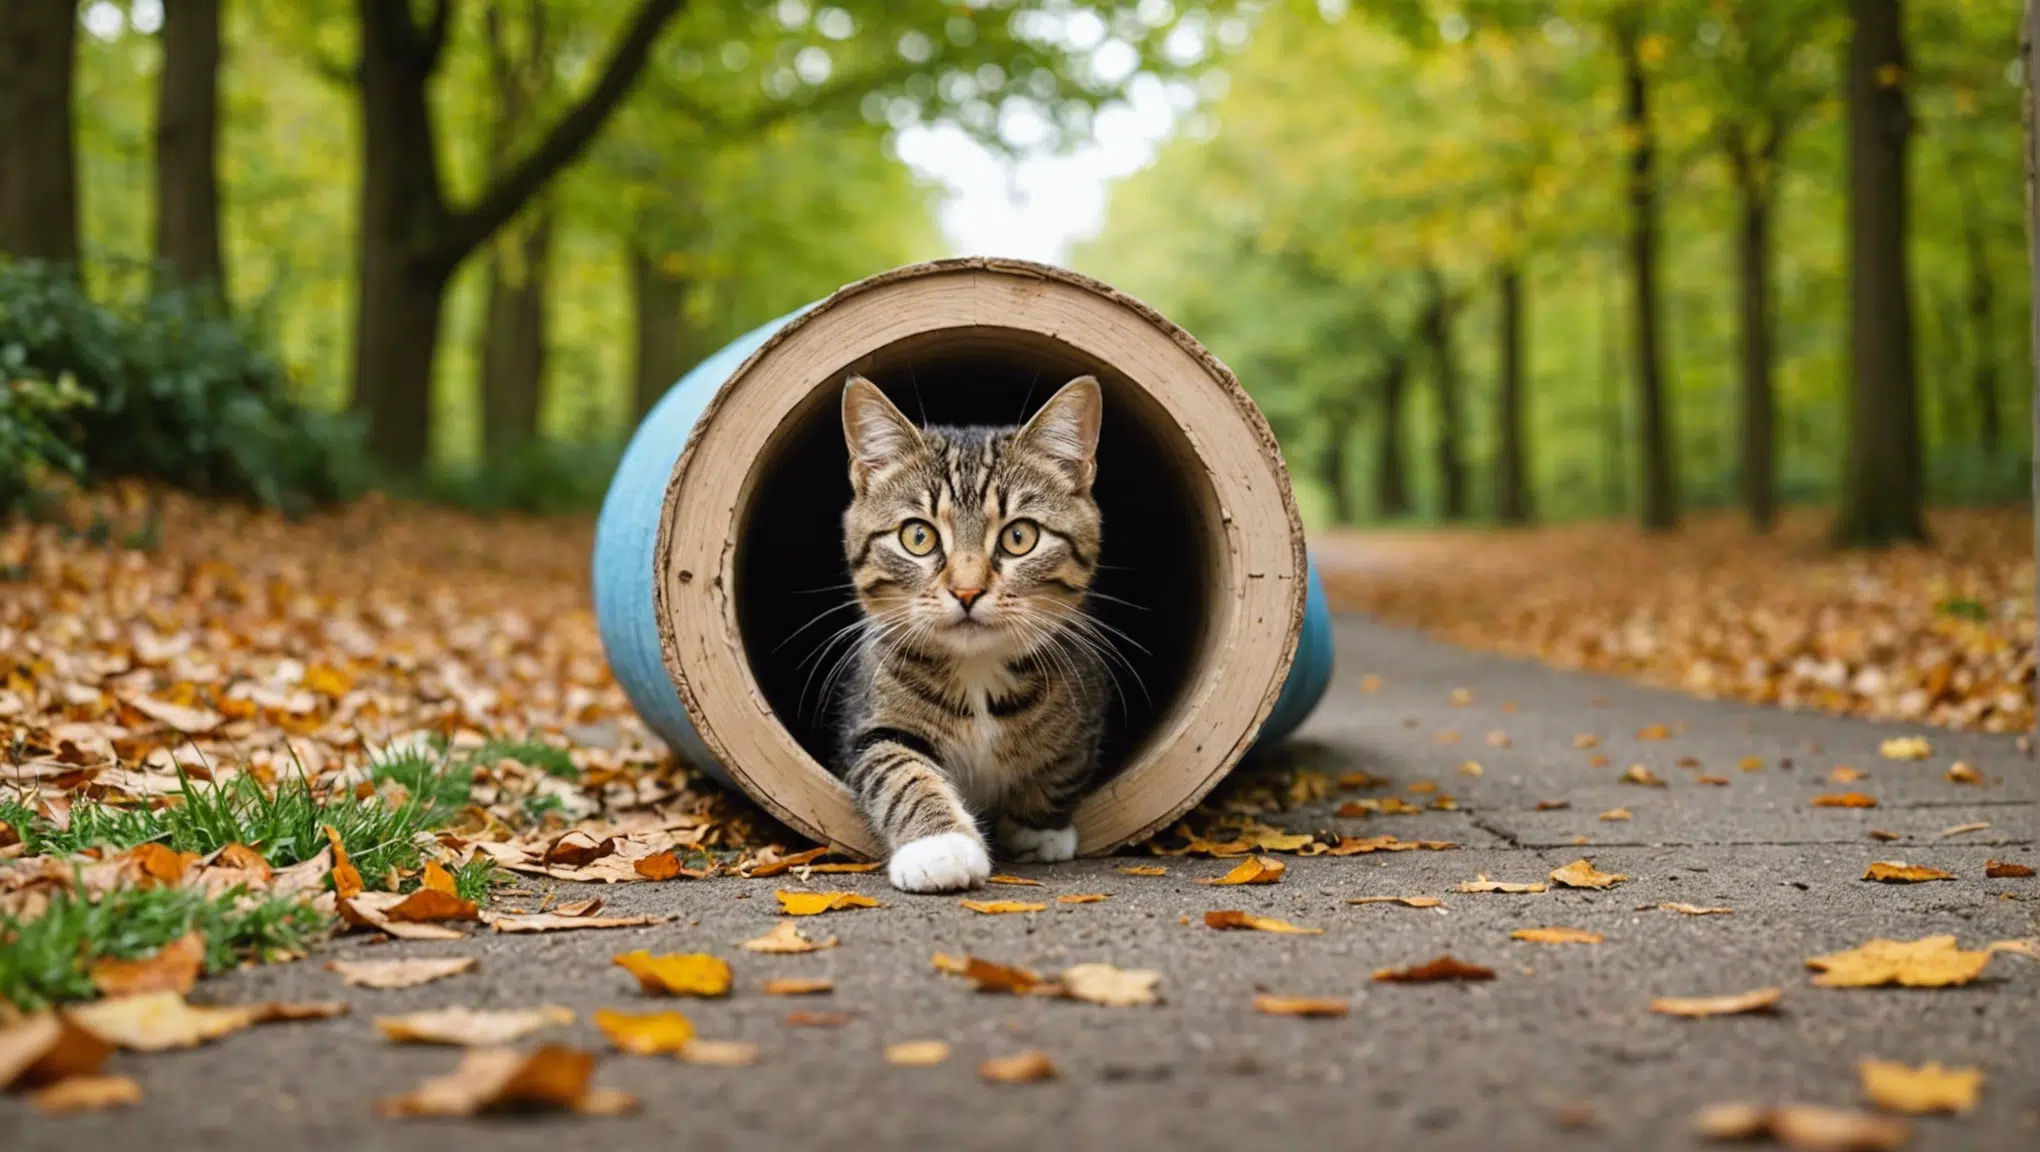 découvrez comment construire un tunnel personnalisé pour divertir votre chat avec nos astuces et idées créatives. rendez l'heure du jeu encore plus amusante pour votre félin préféré !